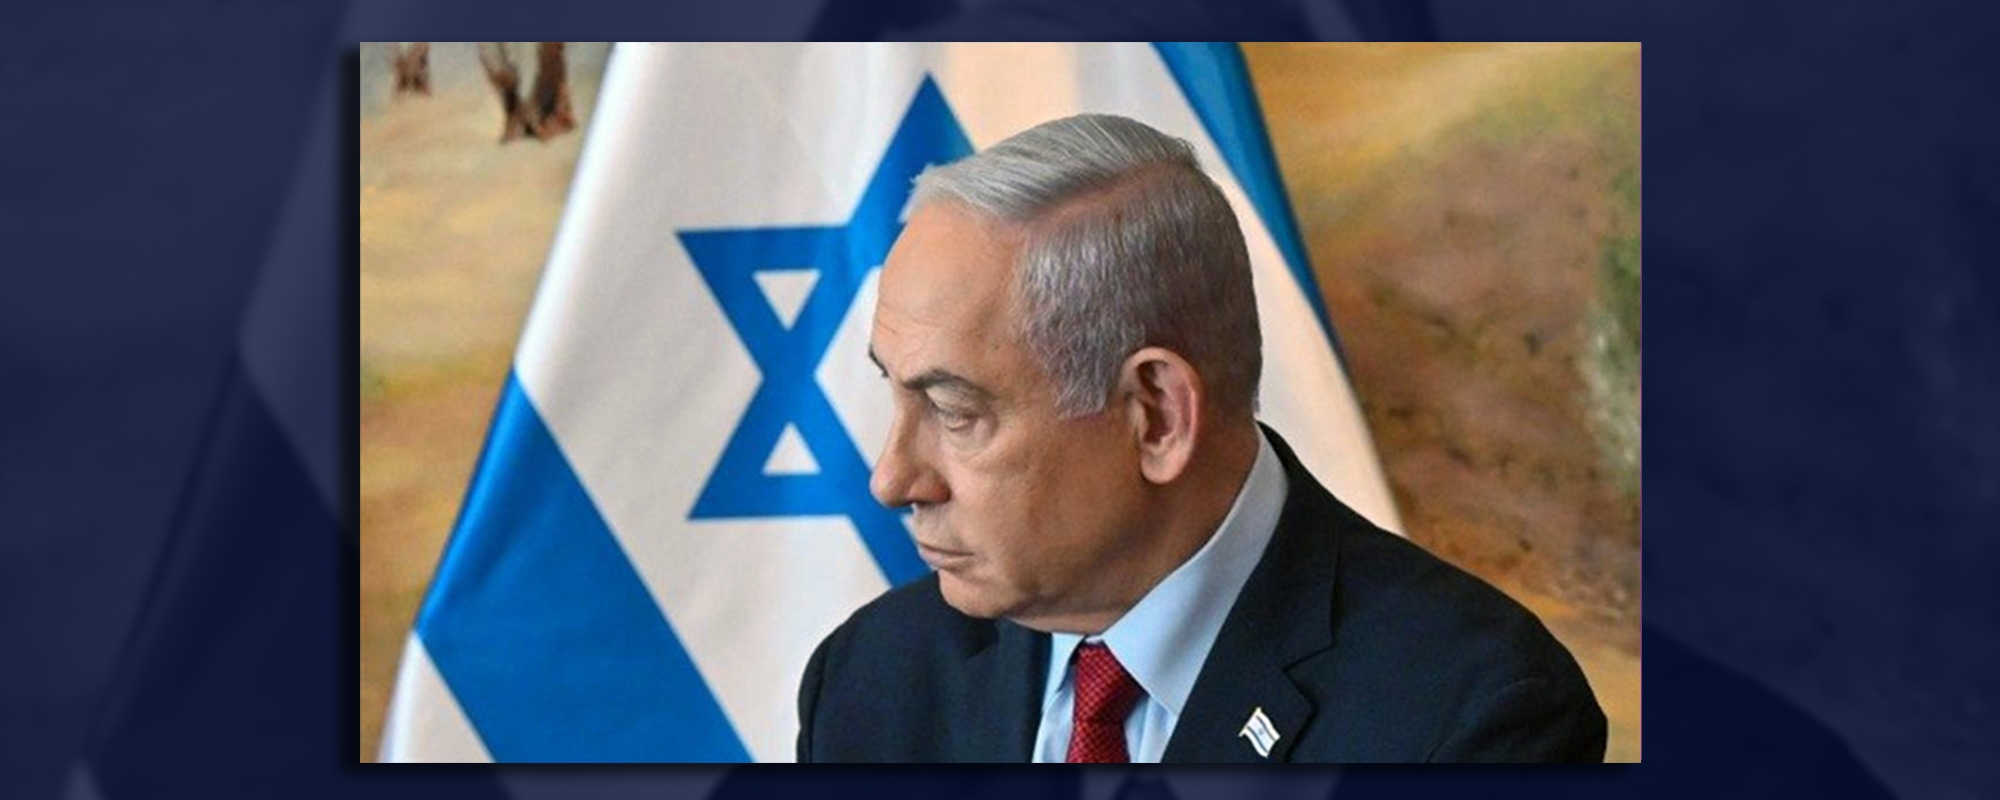 Netanyahu nun Tutuklanması Talebinin Hukuki Yansımaları